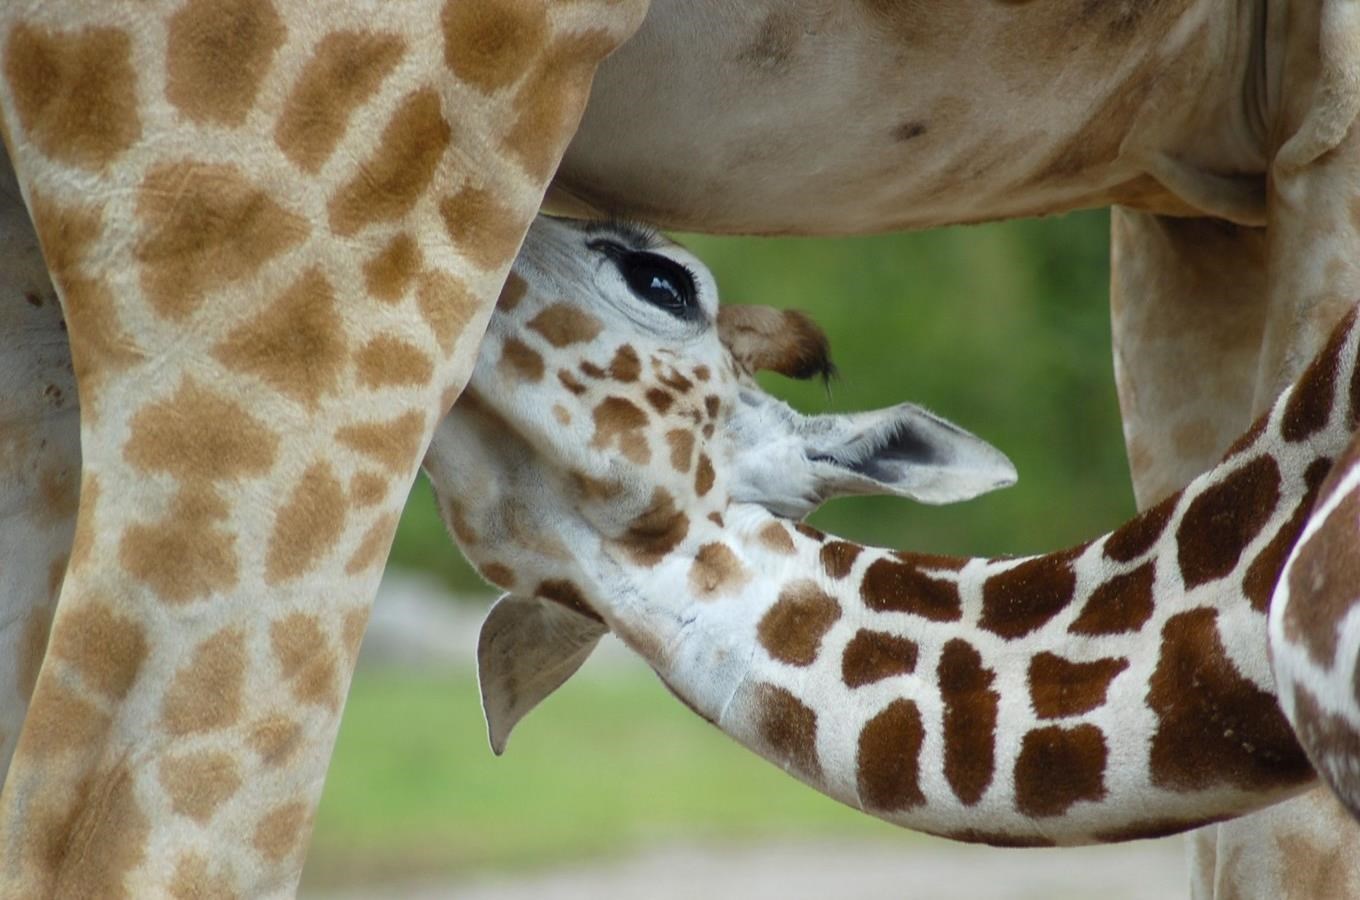 V nedeli 3. února oslaví své první narozeniny hned 2 mládata žirafy Rothschildovy